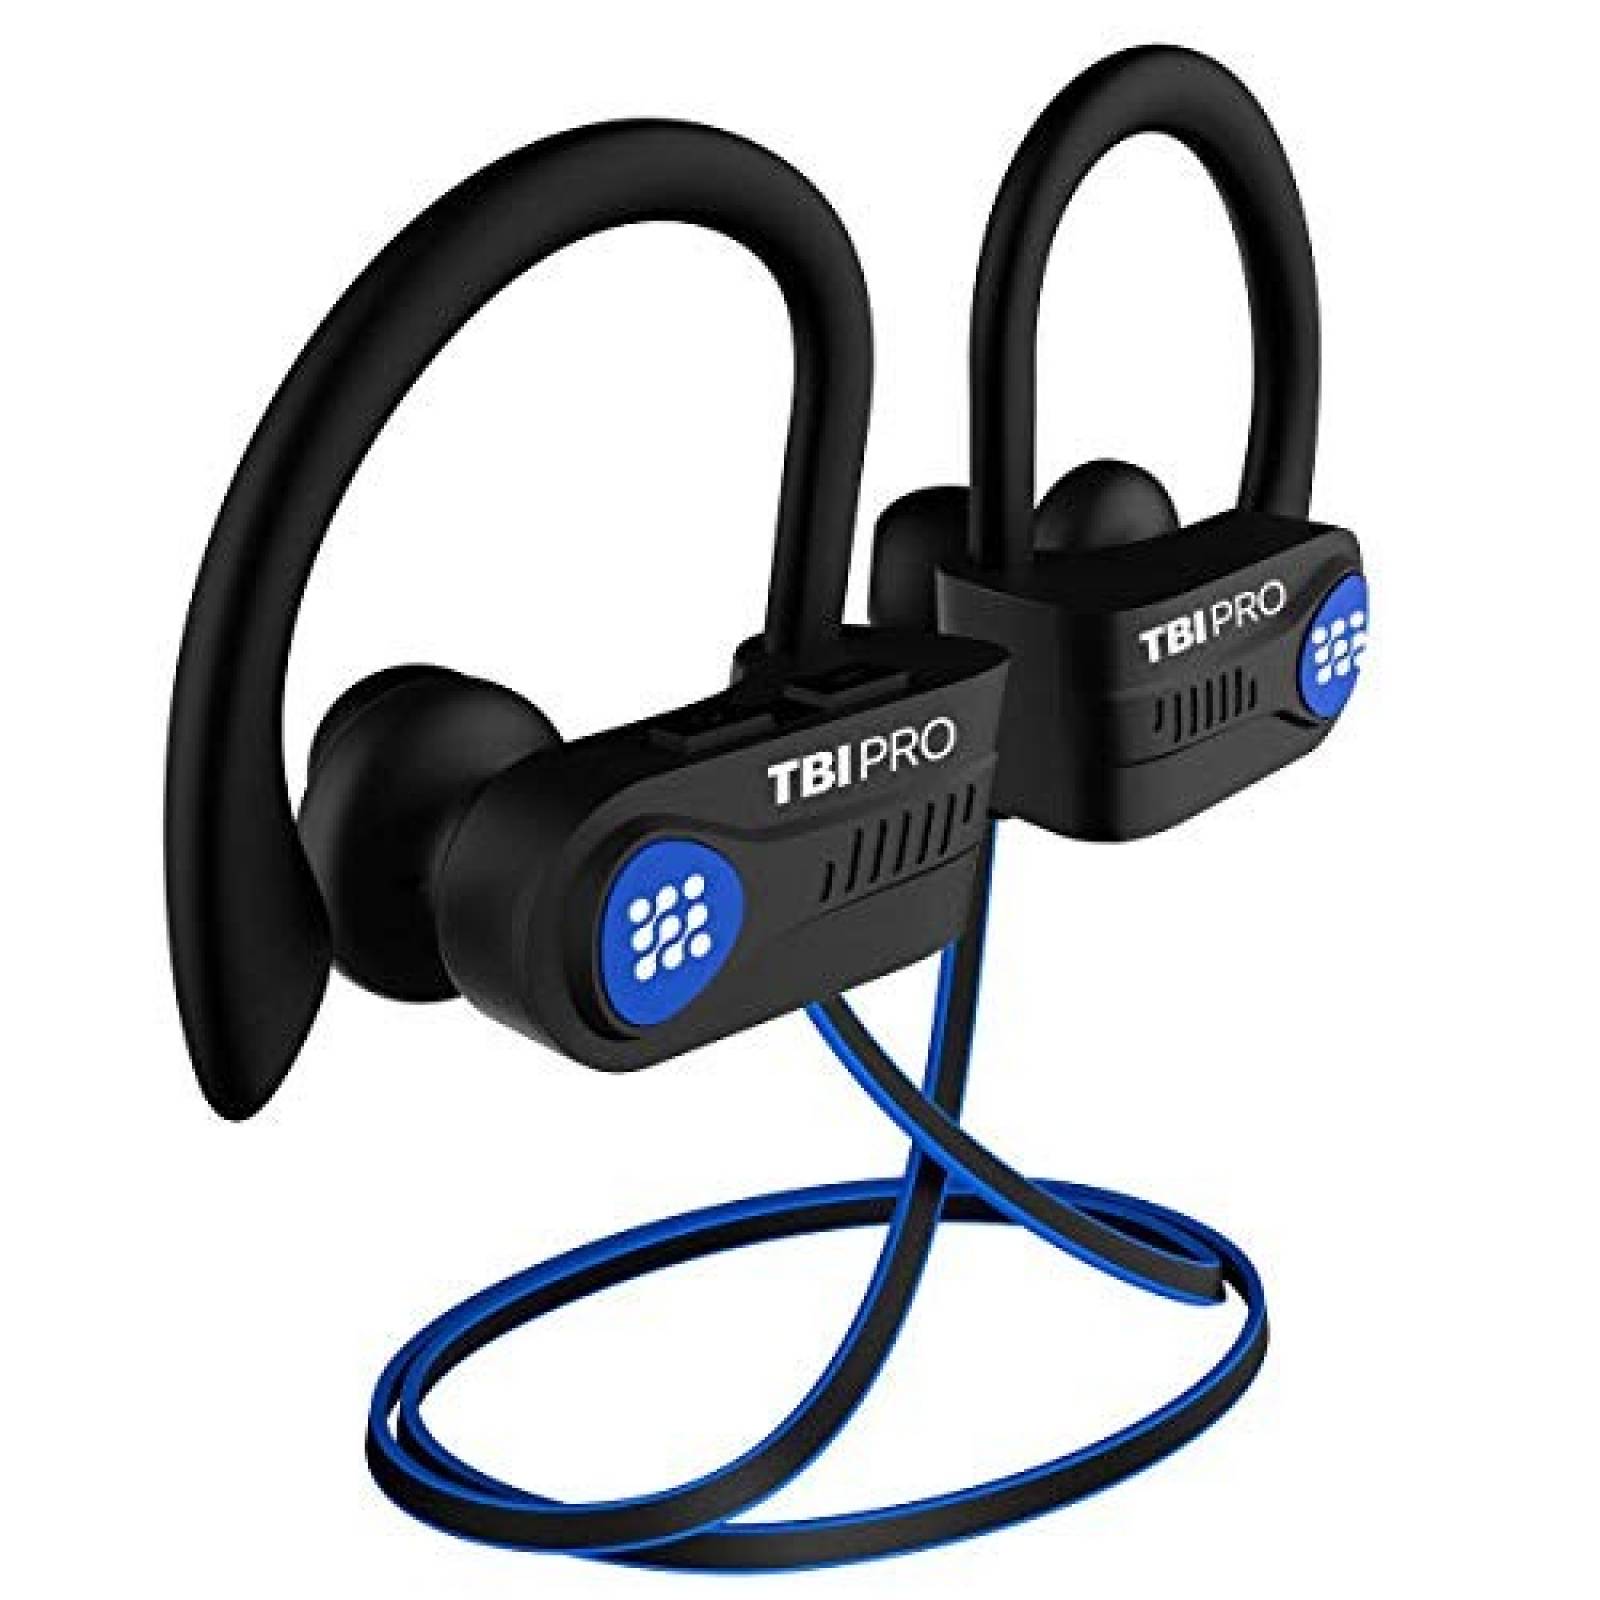 Audífonos TBI Pro Bluetooth impermeables + IPX7 -Negro